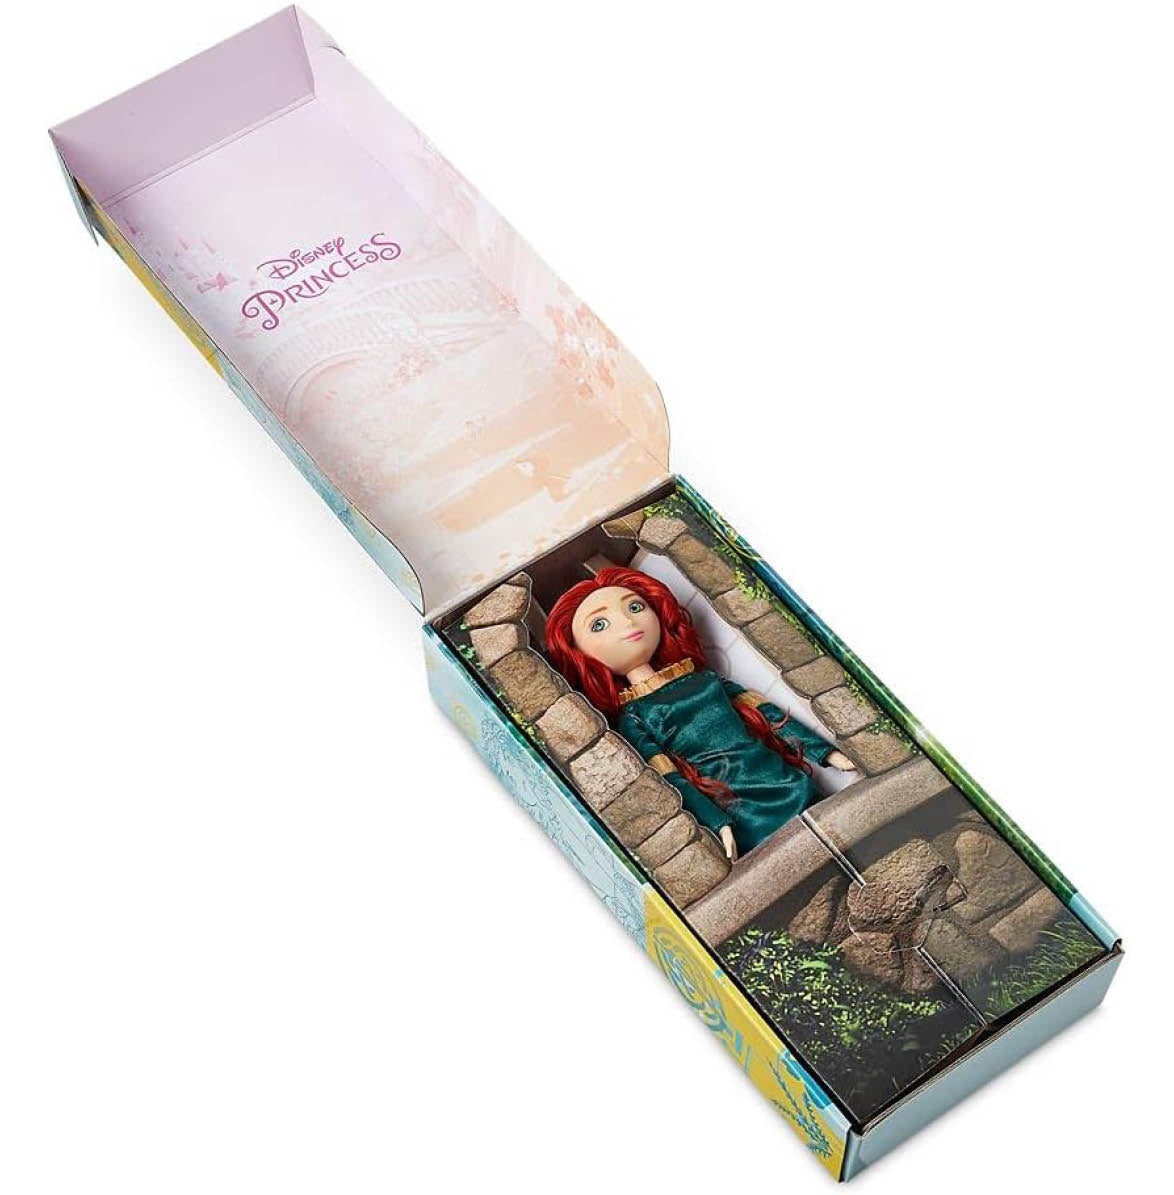 Disney Merida Brave Classic Doll in Box